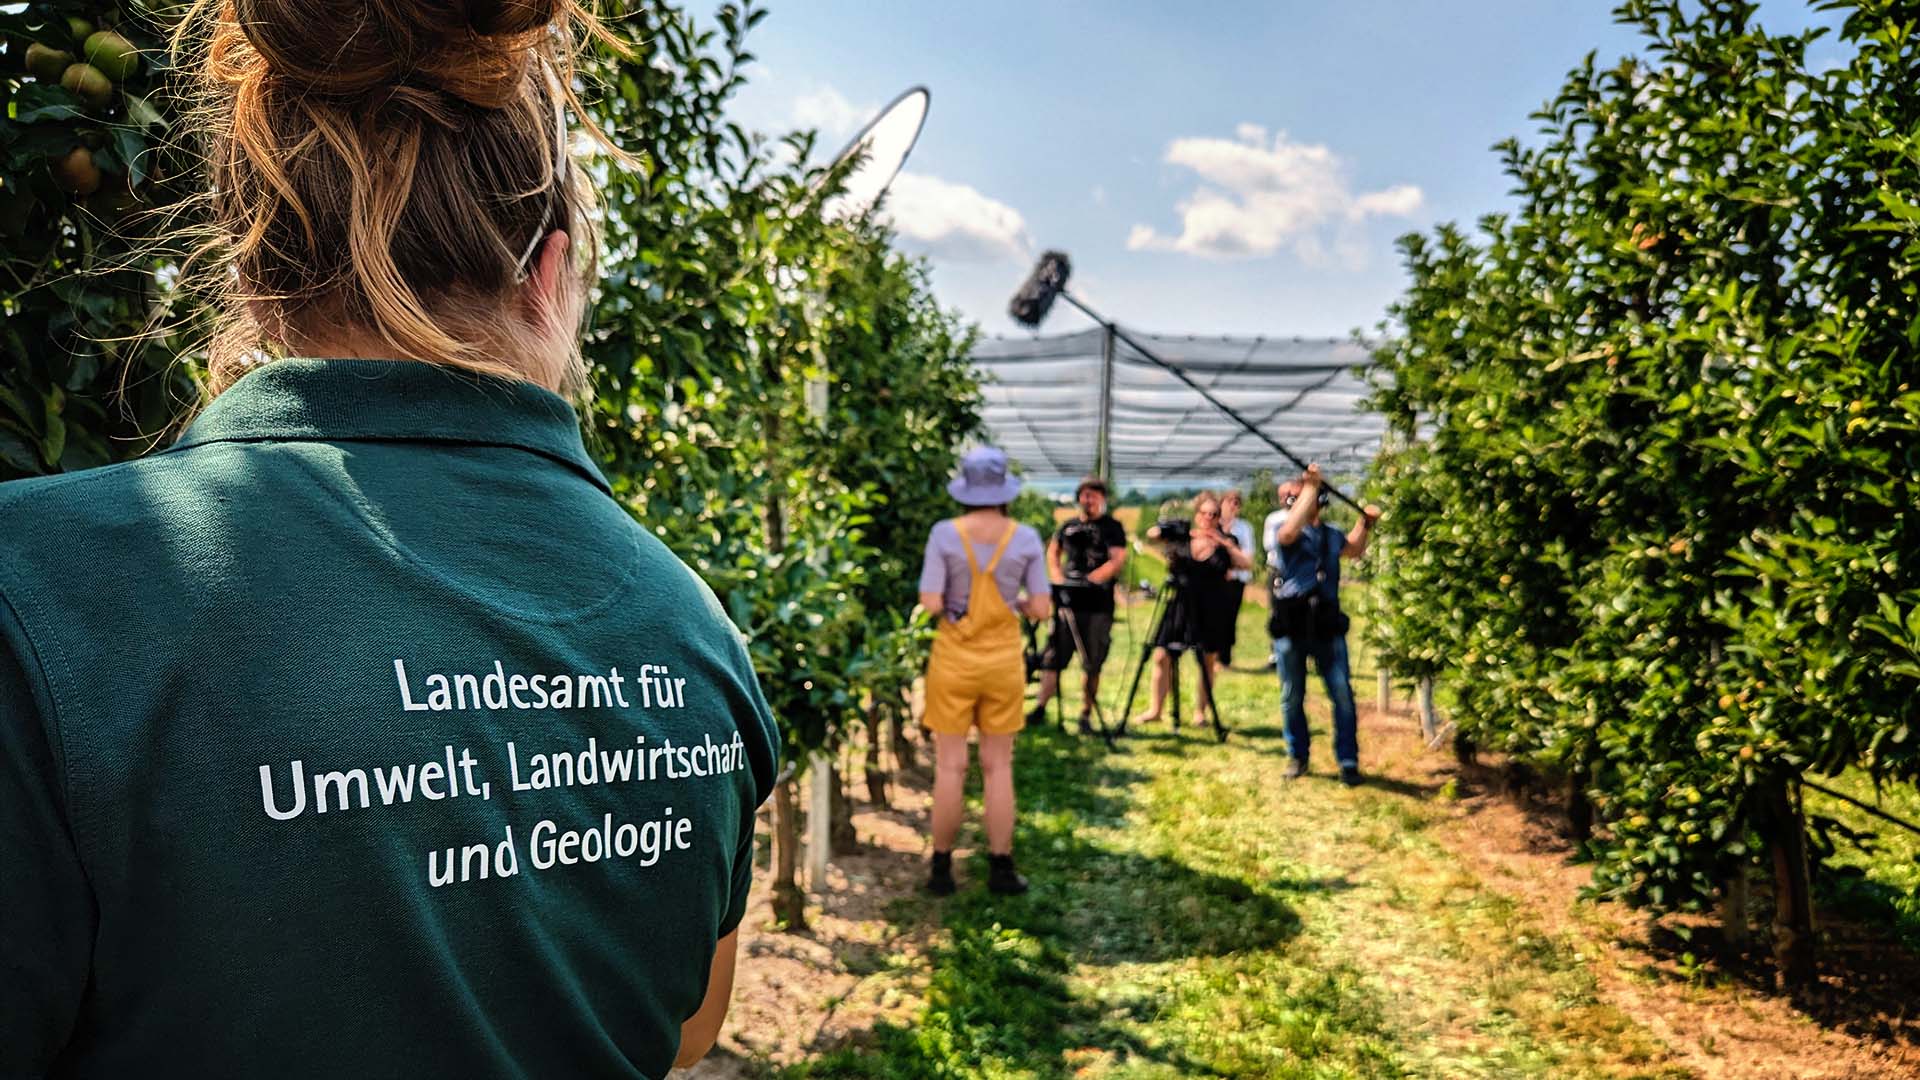 Videoproduktion zwischen Natur und IT: Das Sächsische Landesamt für Umwelt, Landwirtschaft und Geologie